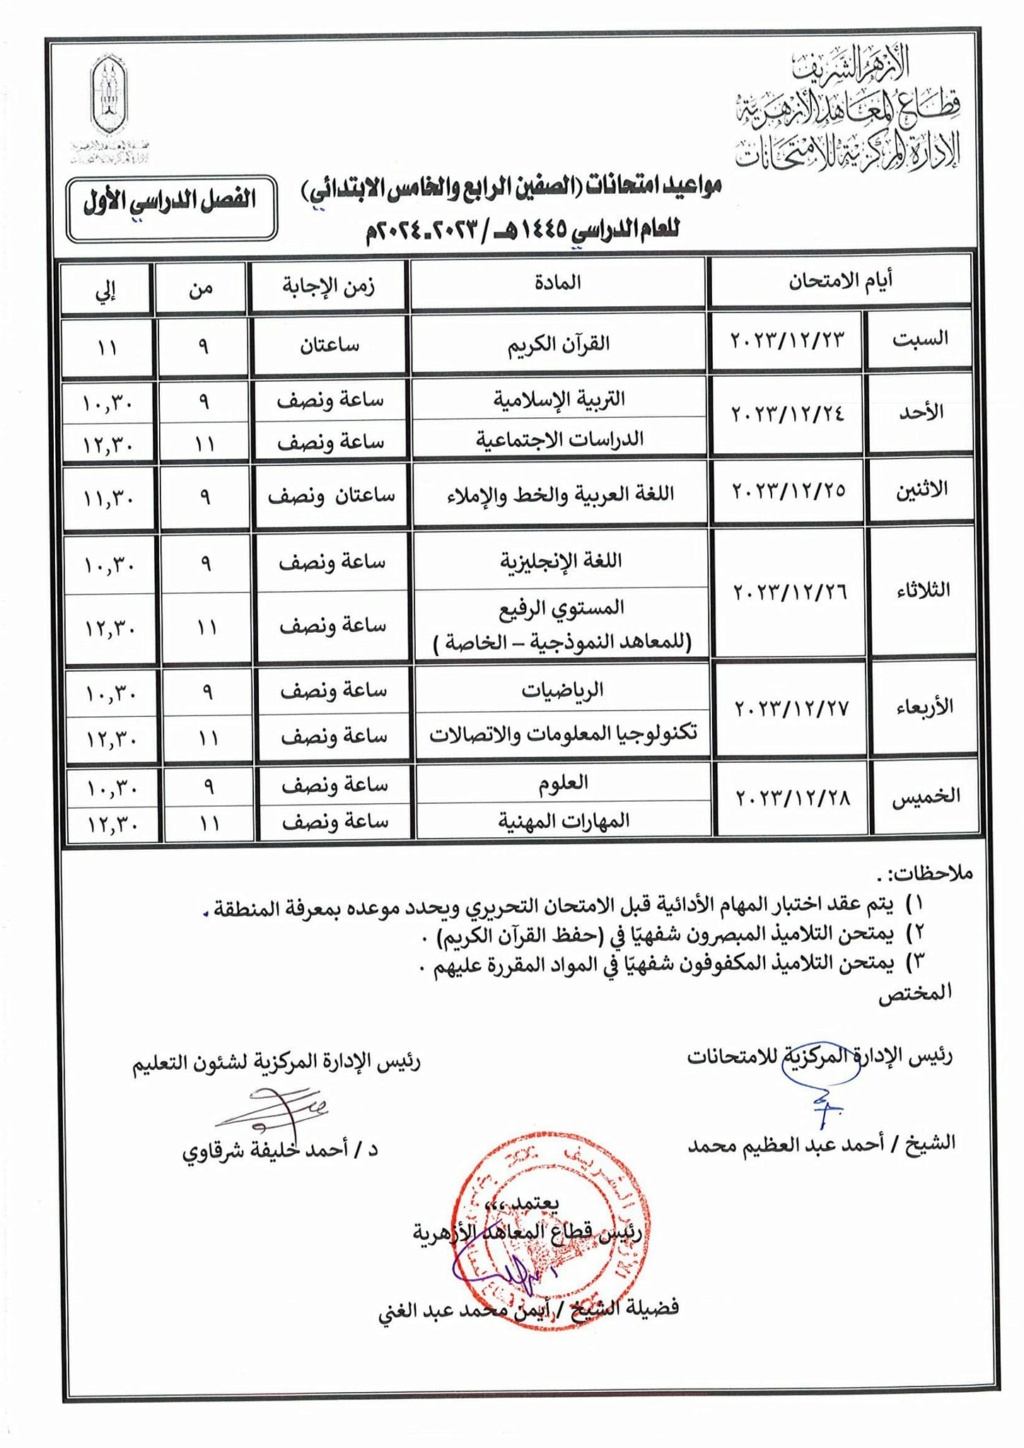 جدول امتحان المهام الأدائية رابعة وخامسة ابتدائي بمنطقة الجيزة الازهرية 1261